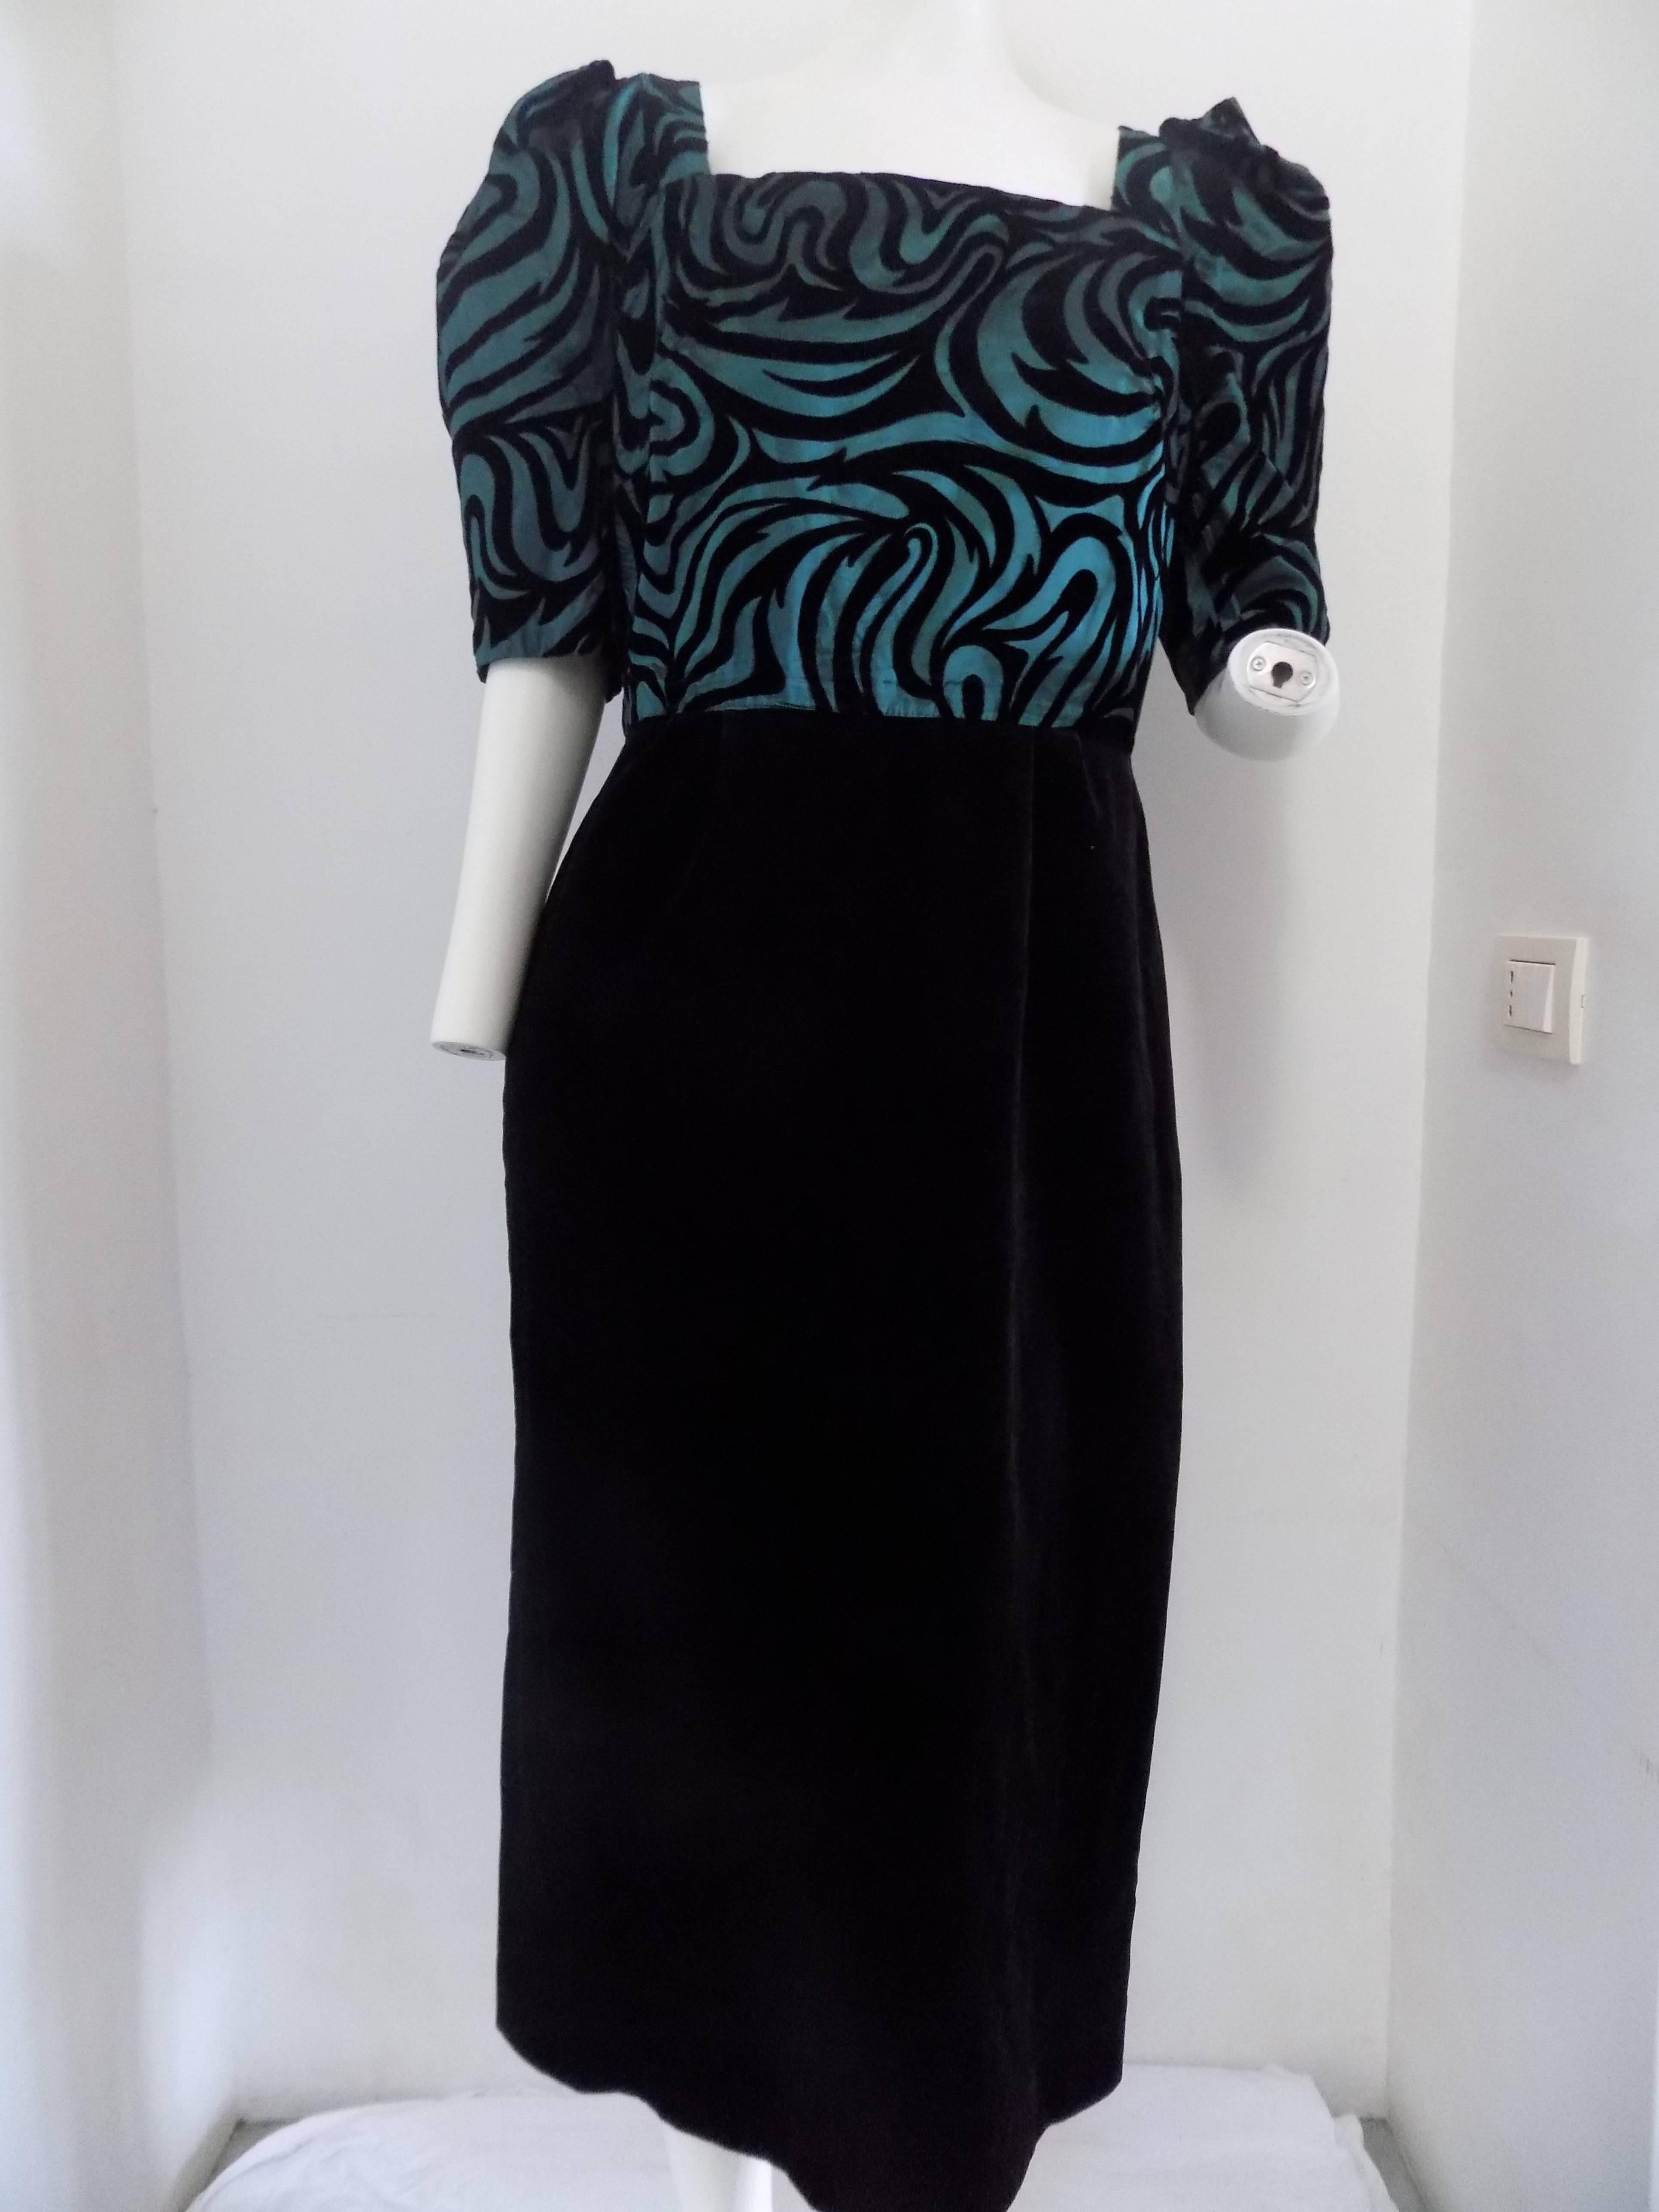 Jung Modisch long black and green velvet dress totally made in italy in italian size range 42 